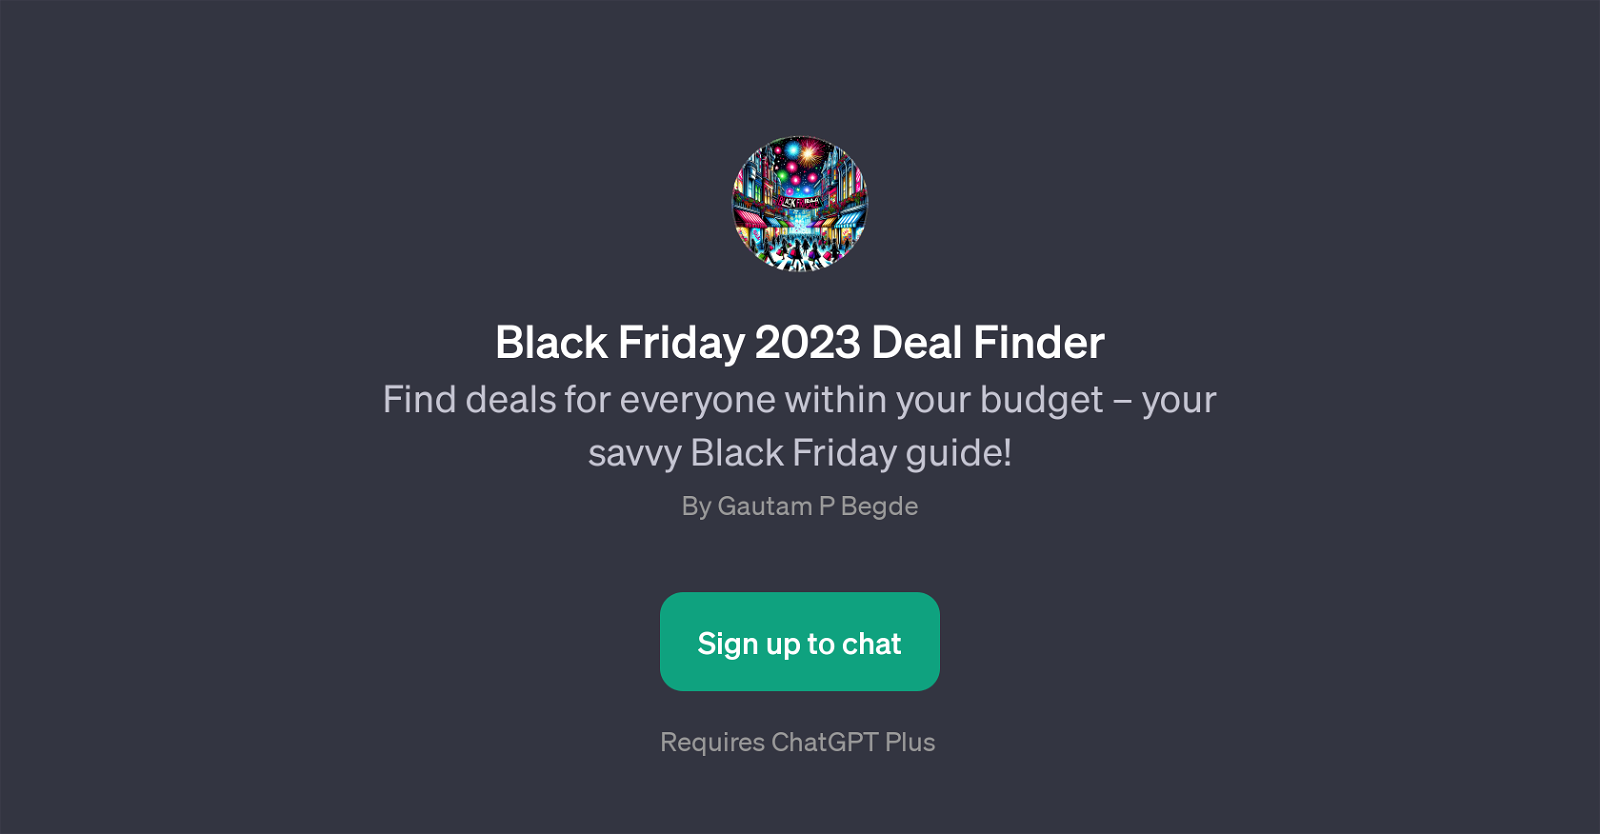 Black Friday 2023 Deal Finder website